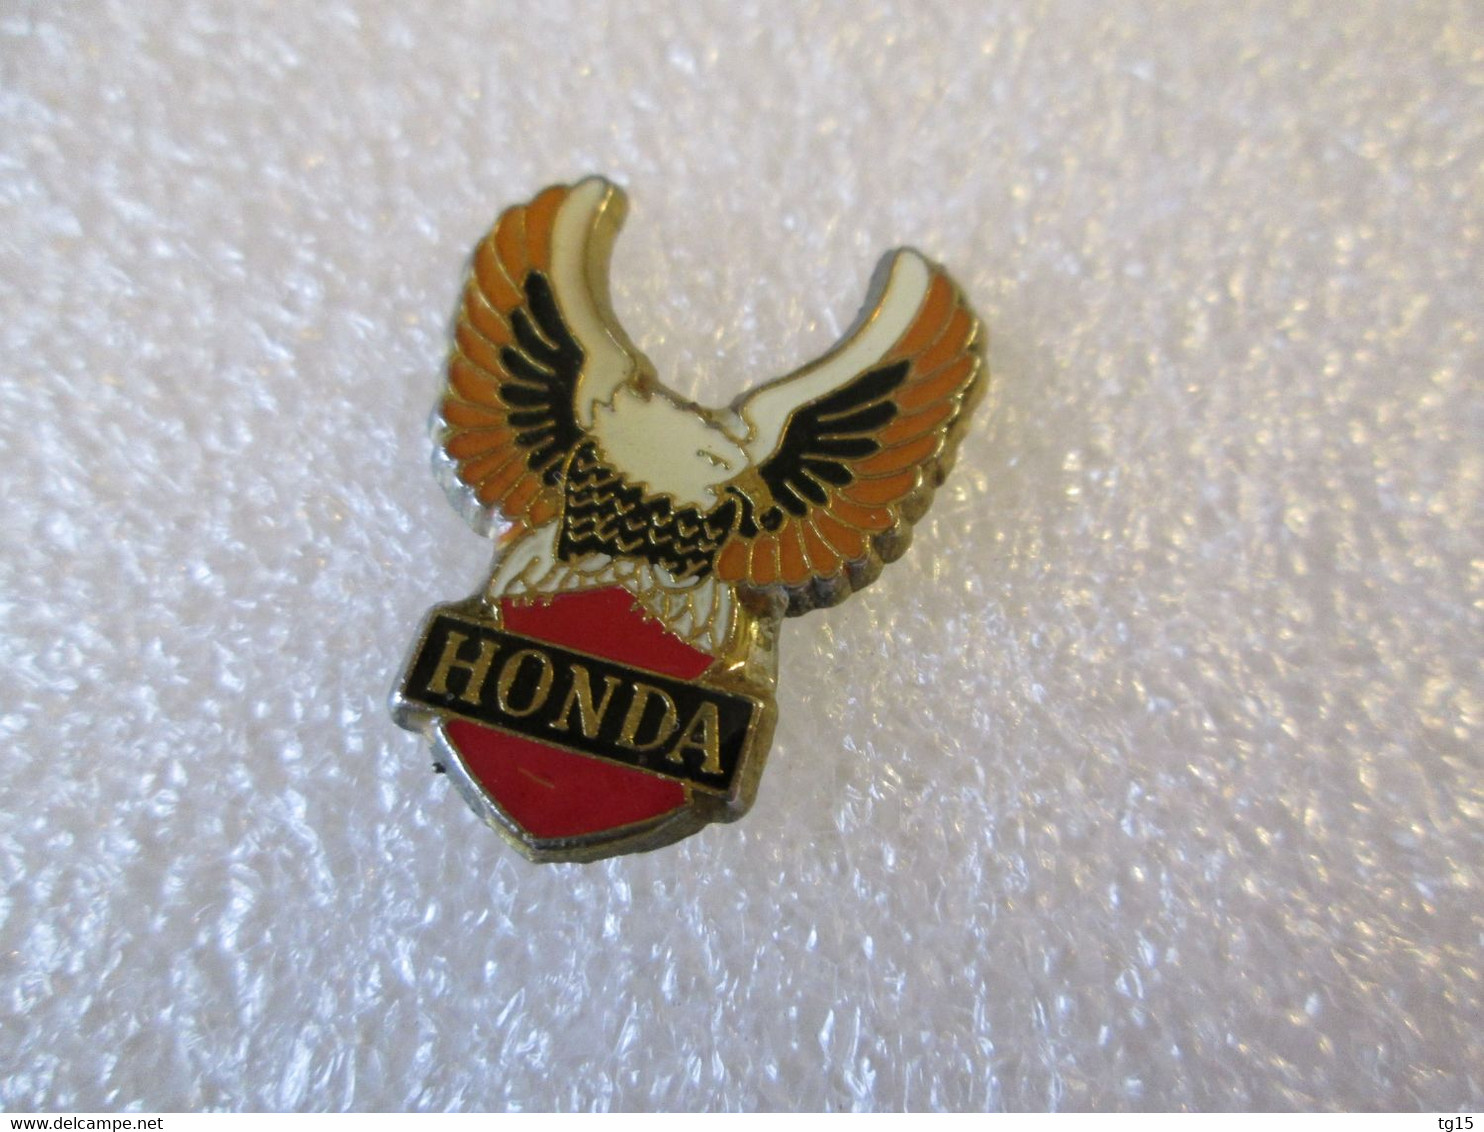 PIN'S    HONDA - Honda